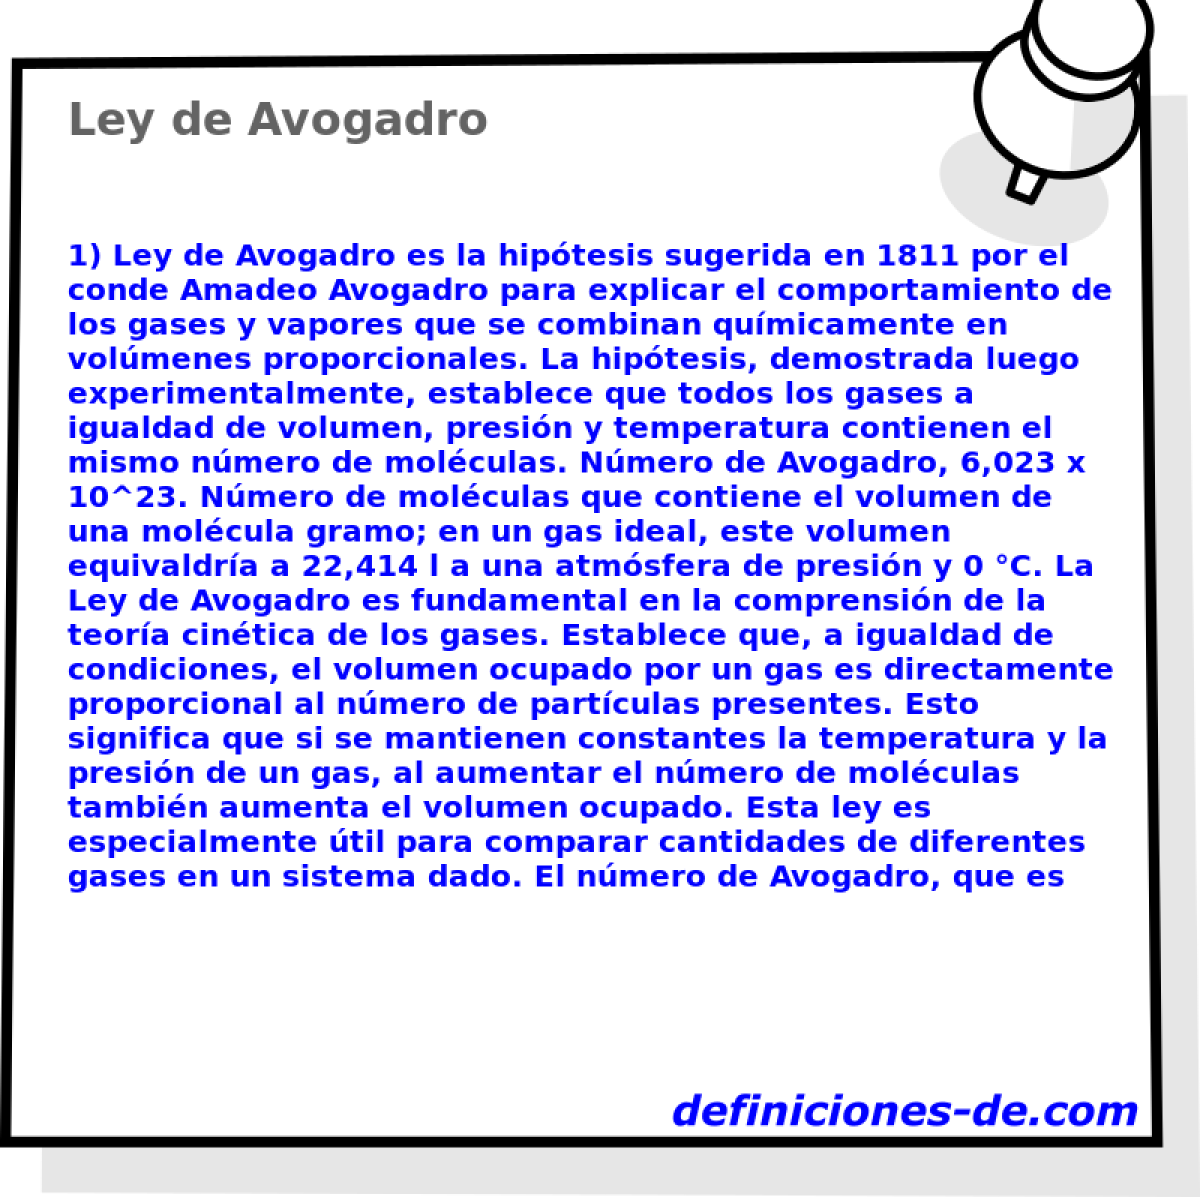 Ley de Avogadro 